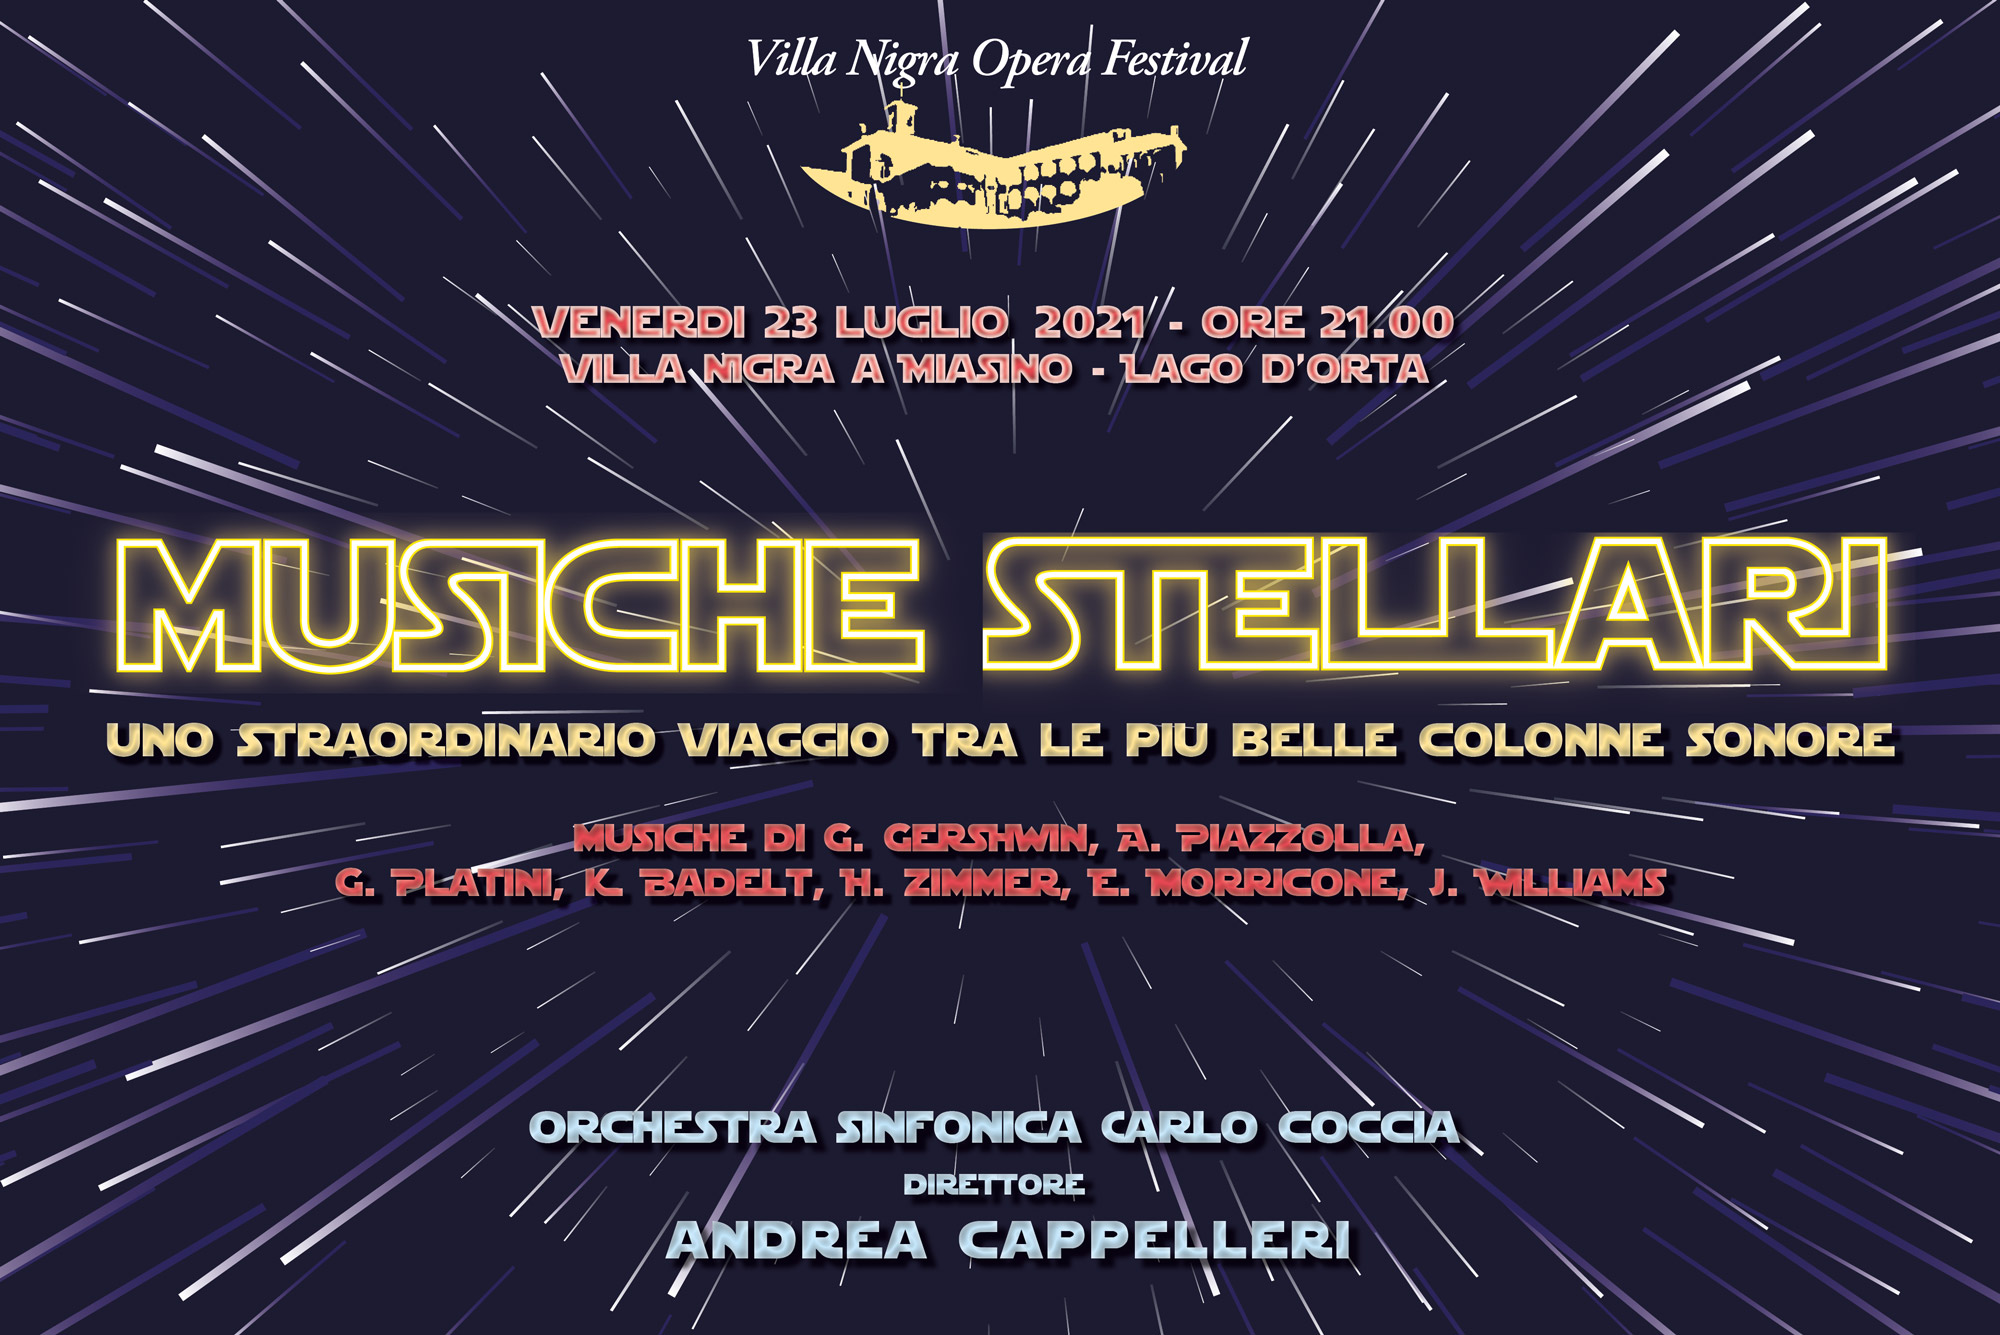 Villa-Nigra-Opera-Festival-Musiche-Stellari-2021